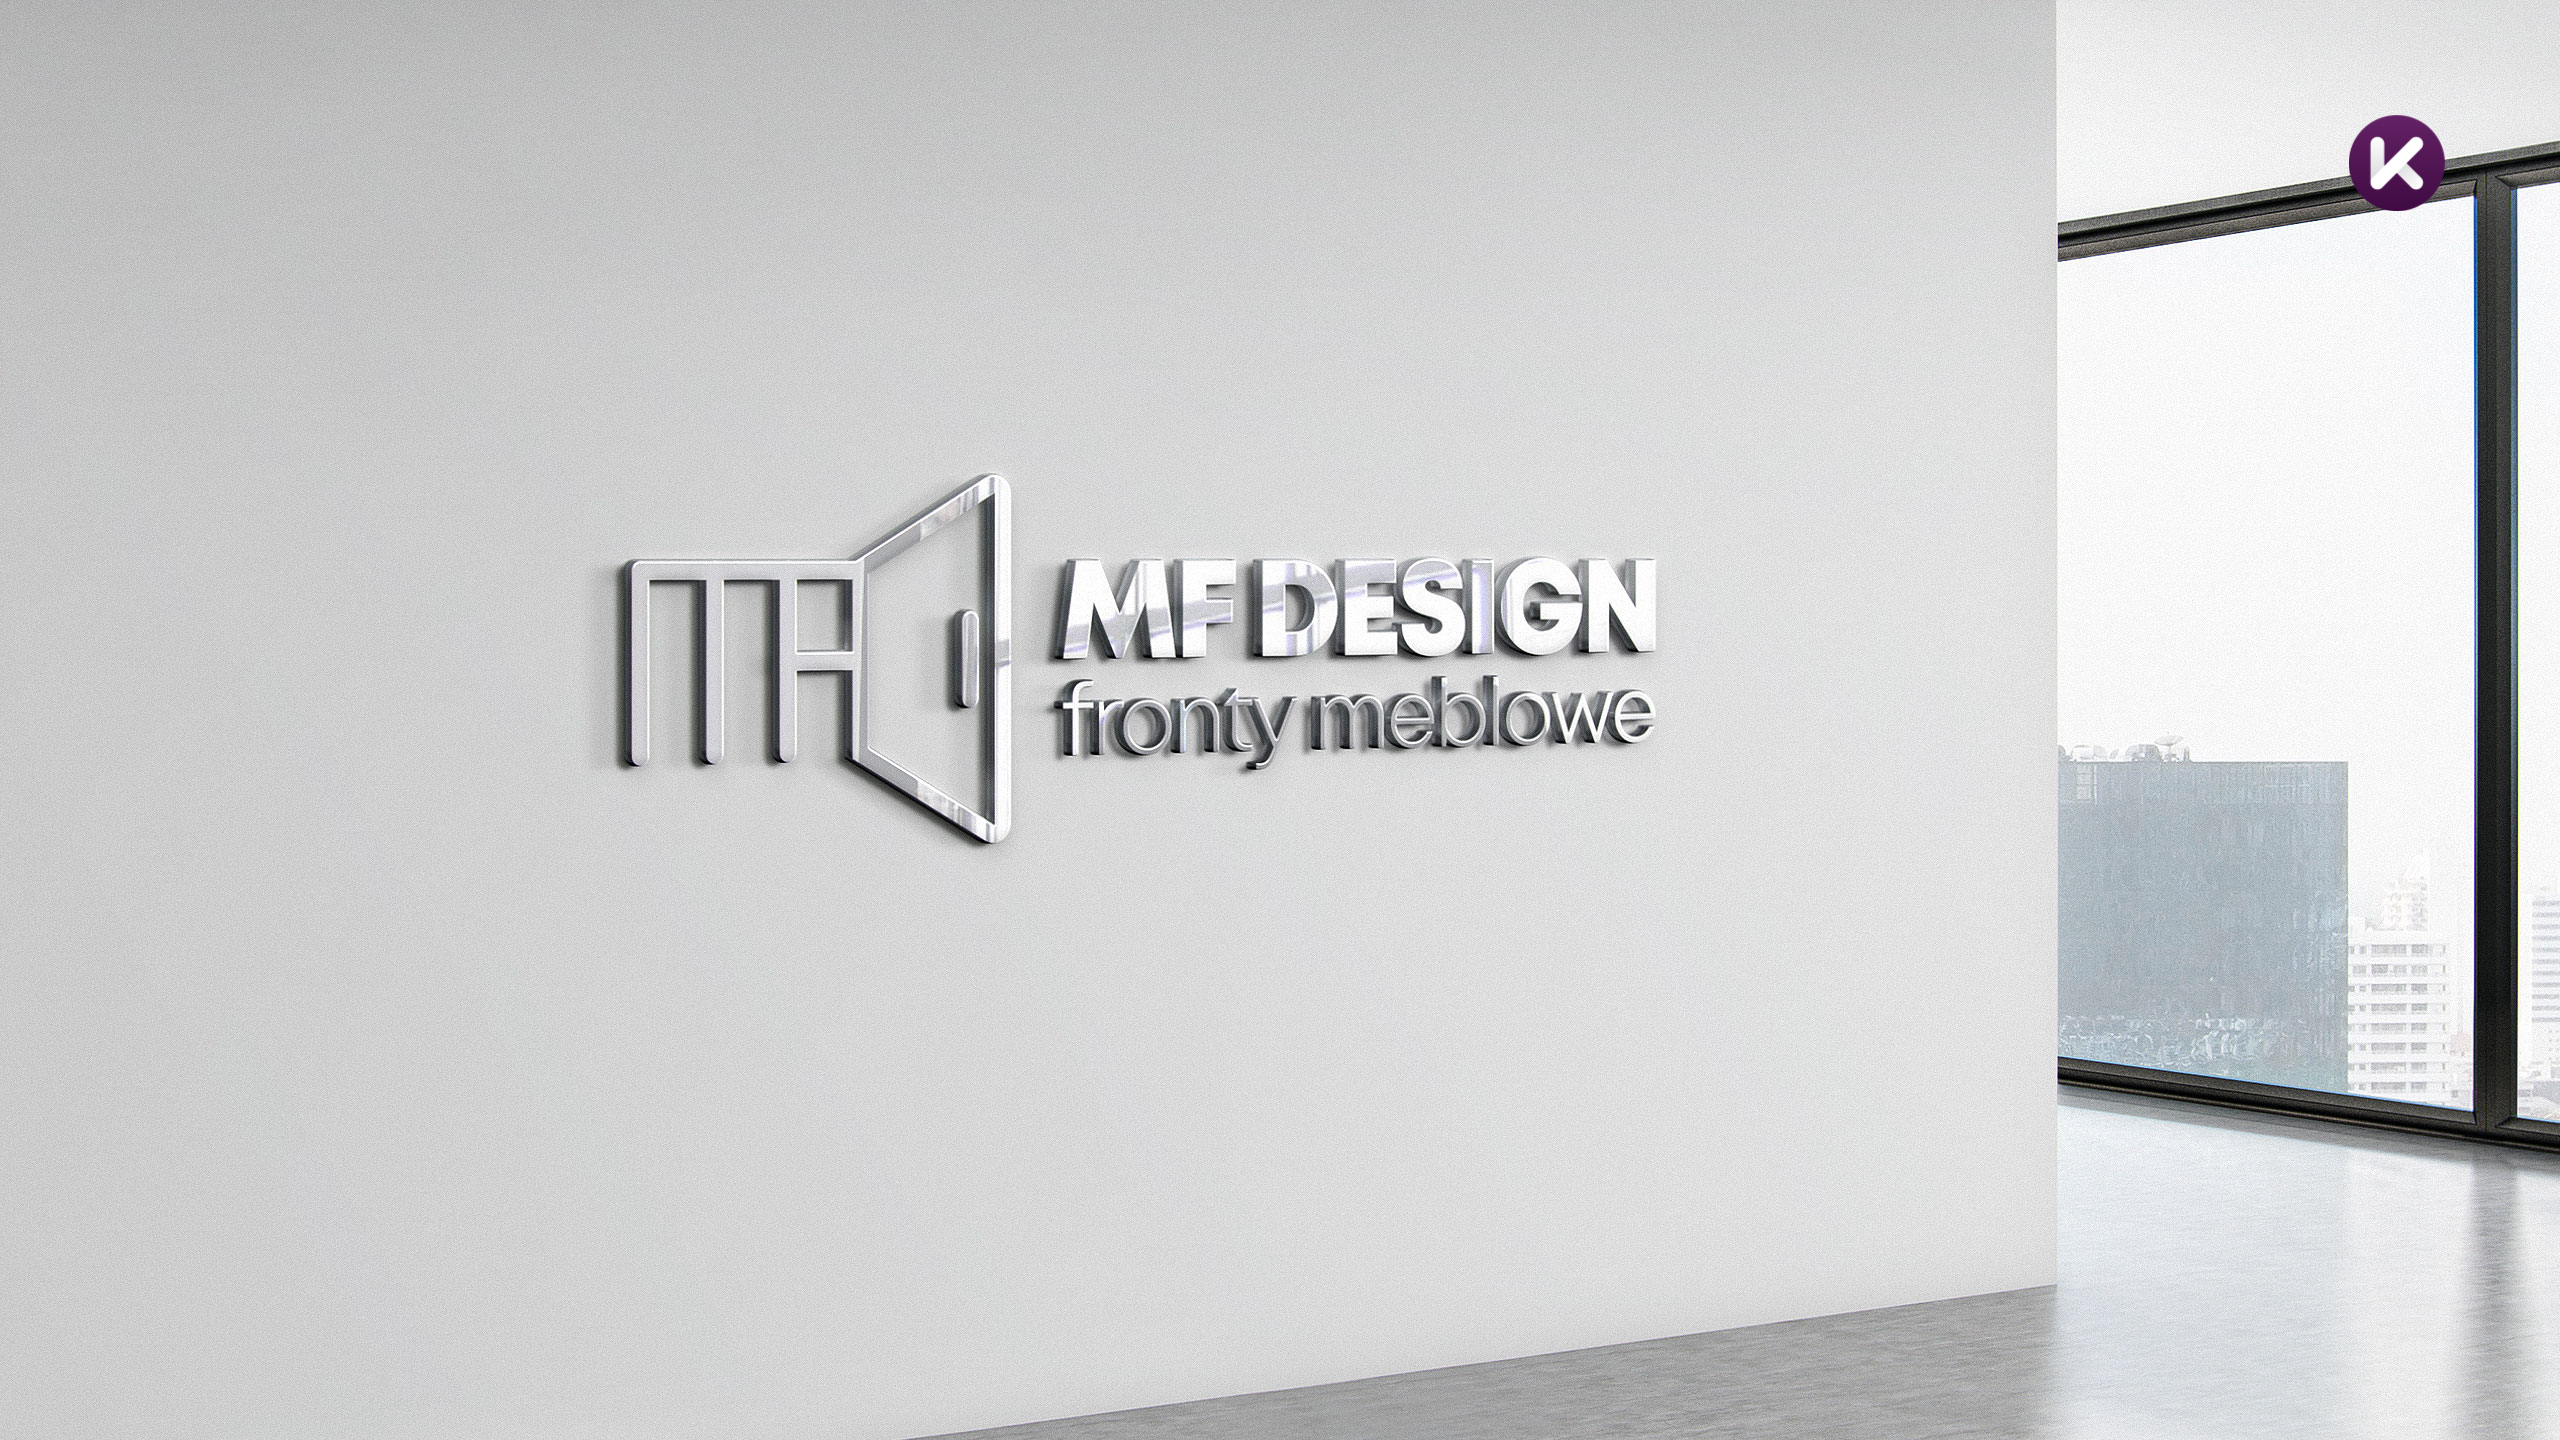 Przestrzenne logo MF Design umieszczone na ścianie